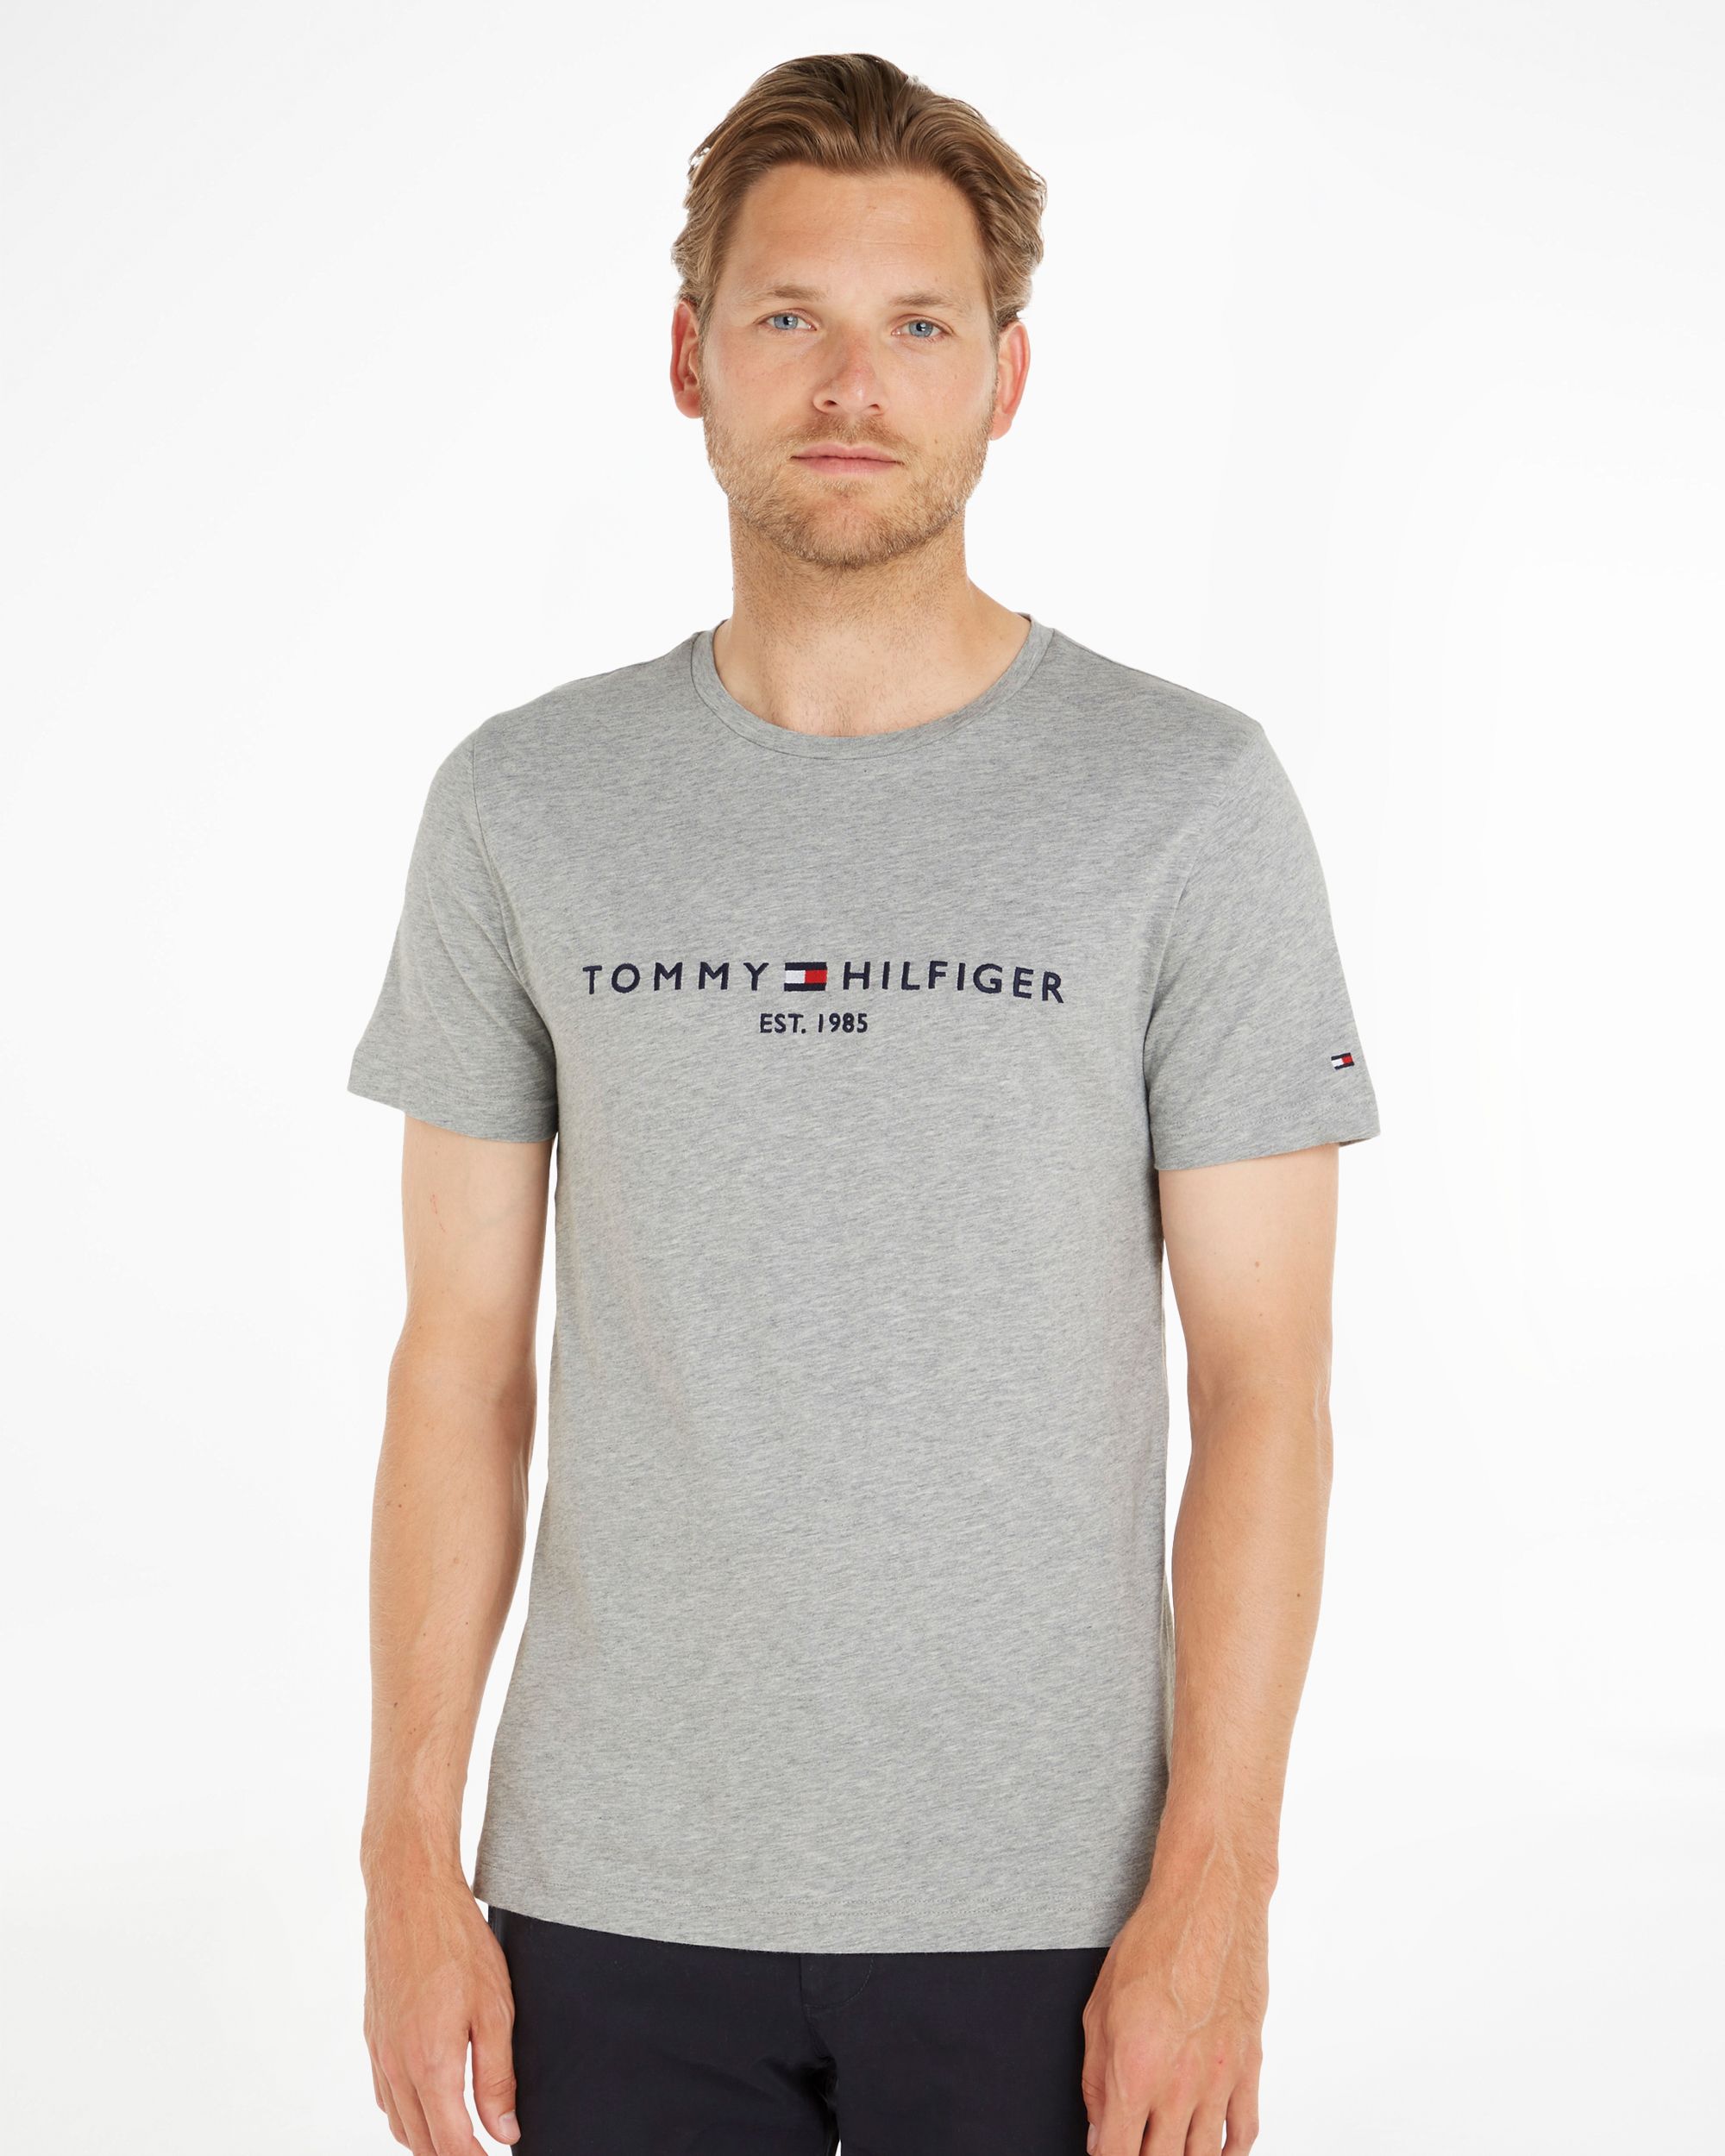 Tommy Hilfiger Menswear T-shirt KM Licht grijs 086991-001-L